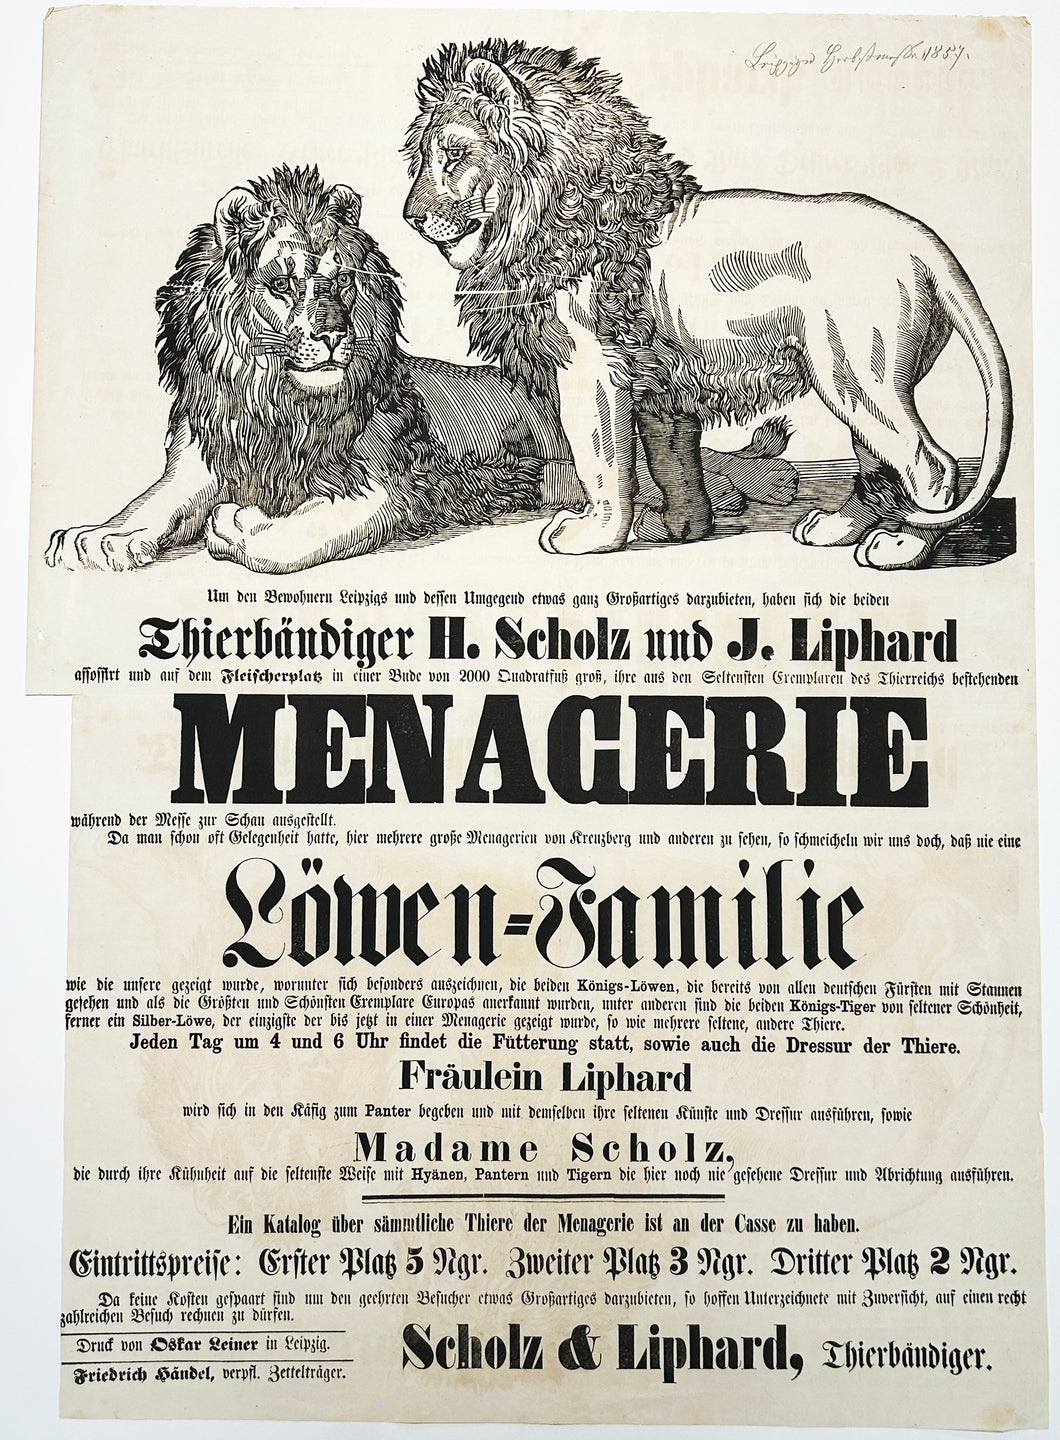 [Affiche sur la Ménagerie réalisée par les dompteurs d'animaux H. Scholz et J. Liphard à Leipzig]. c.1857.